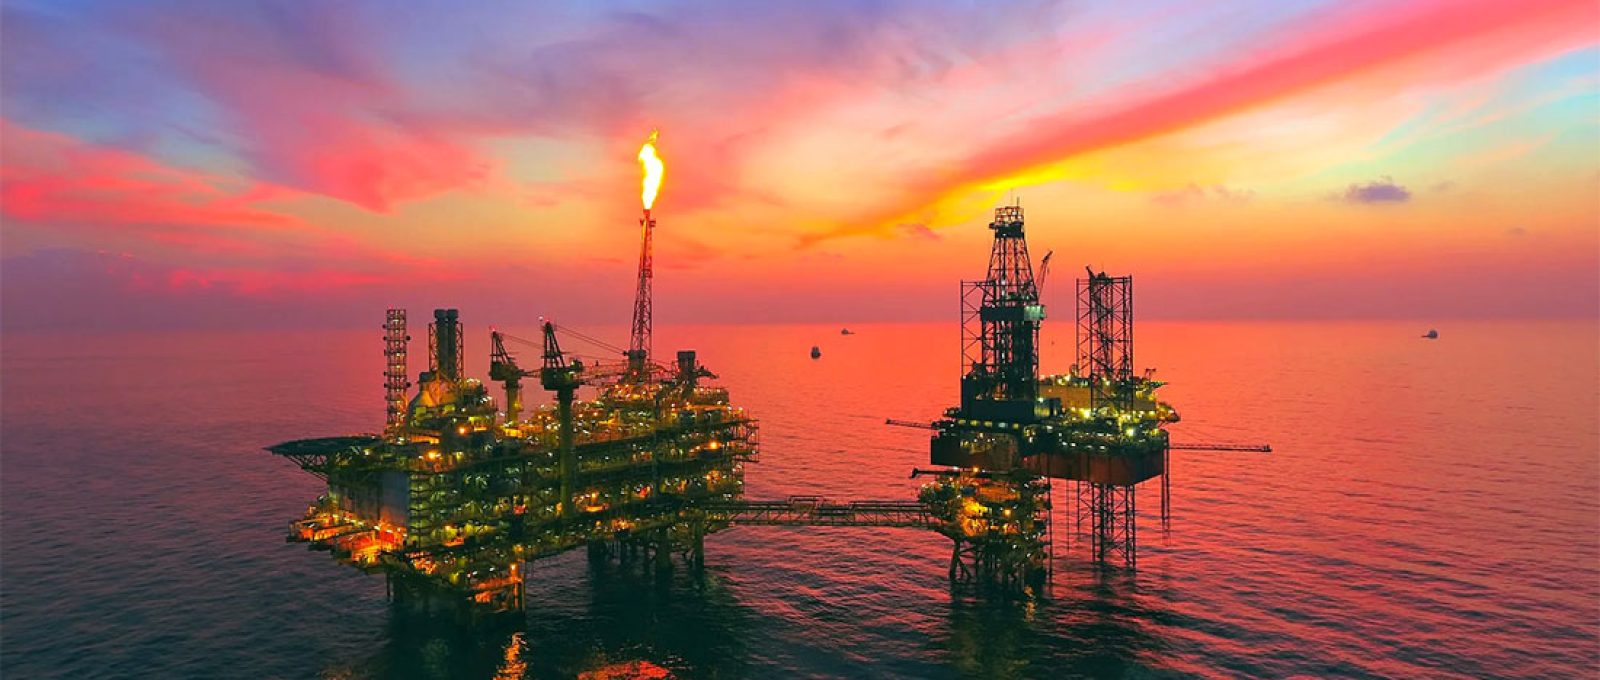 Plataforma no Leviathan, maior campo de gás offshore de Israel (AzmanMD/Shutterstock).